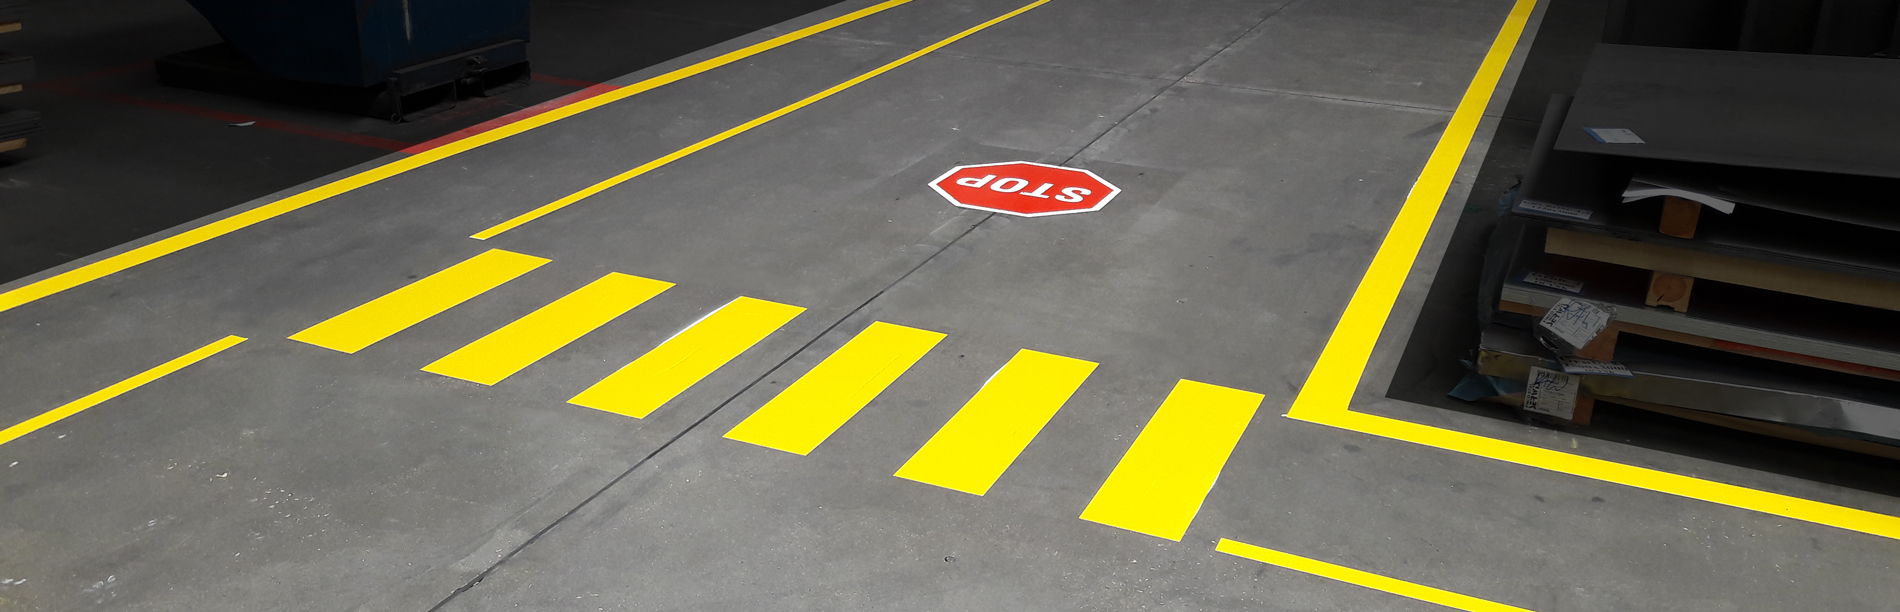 Industrial floor markings